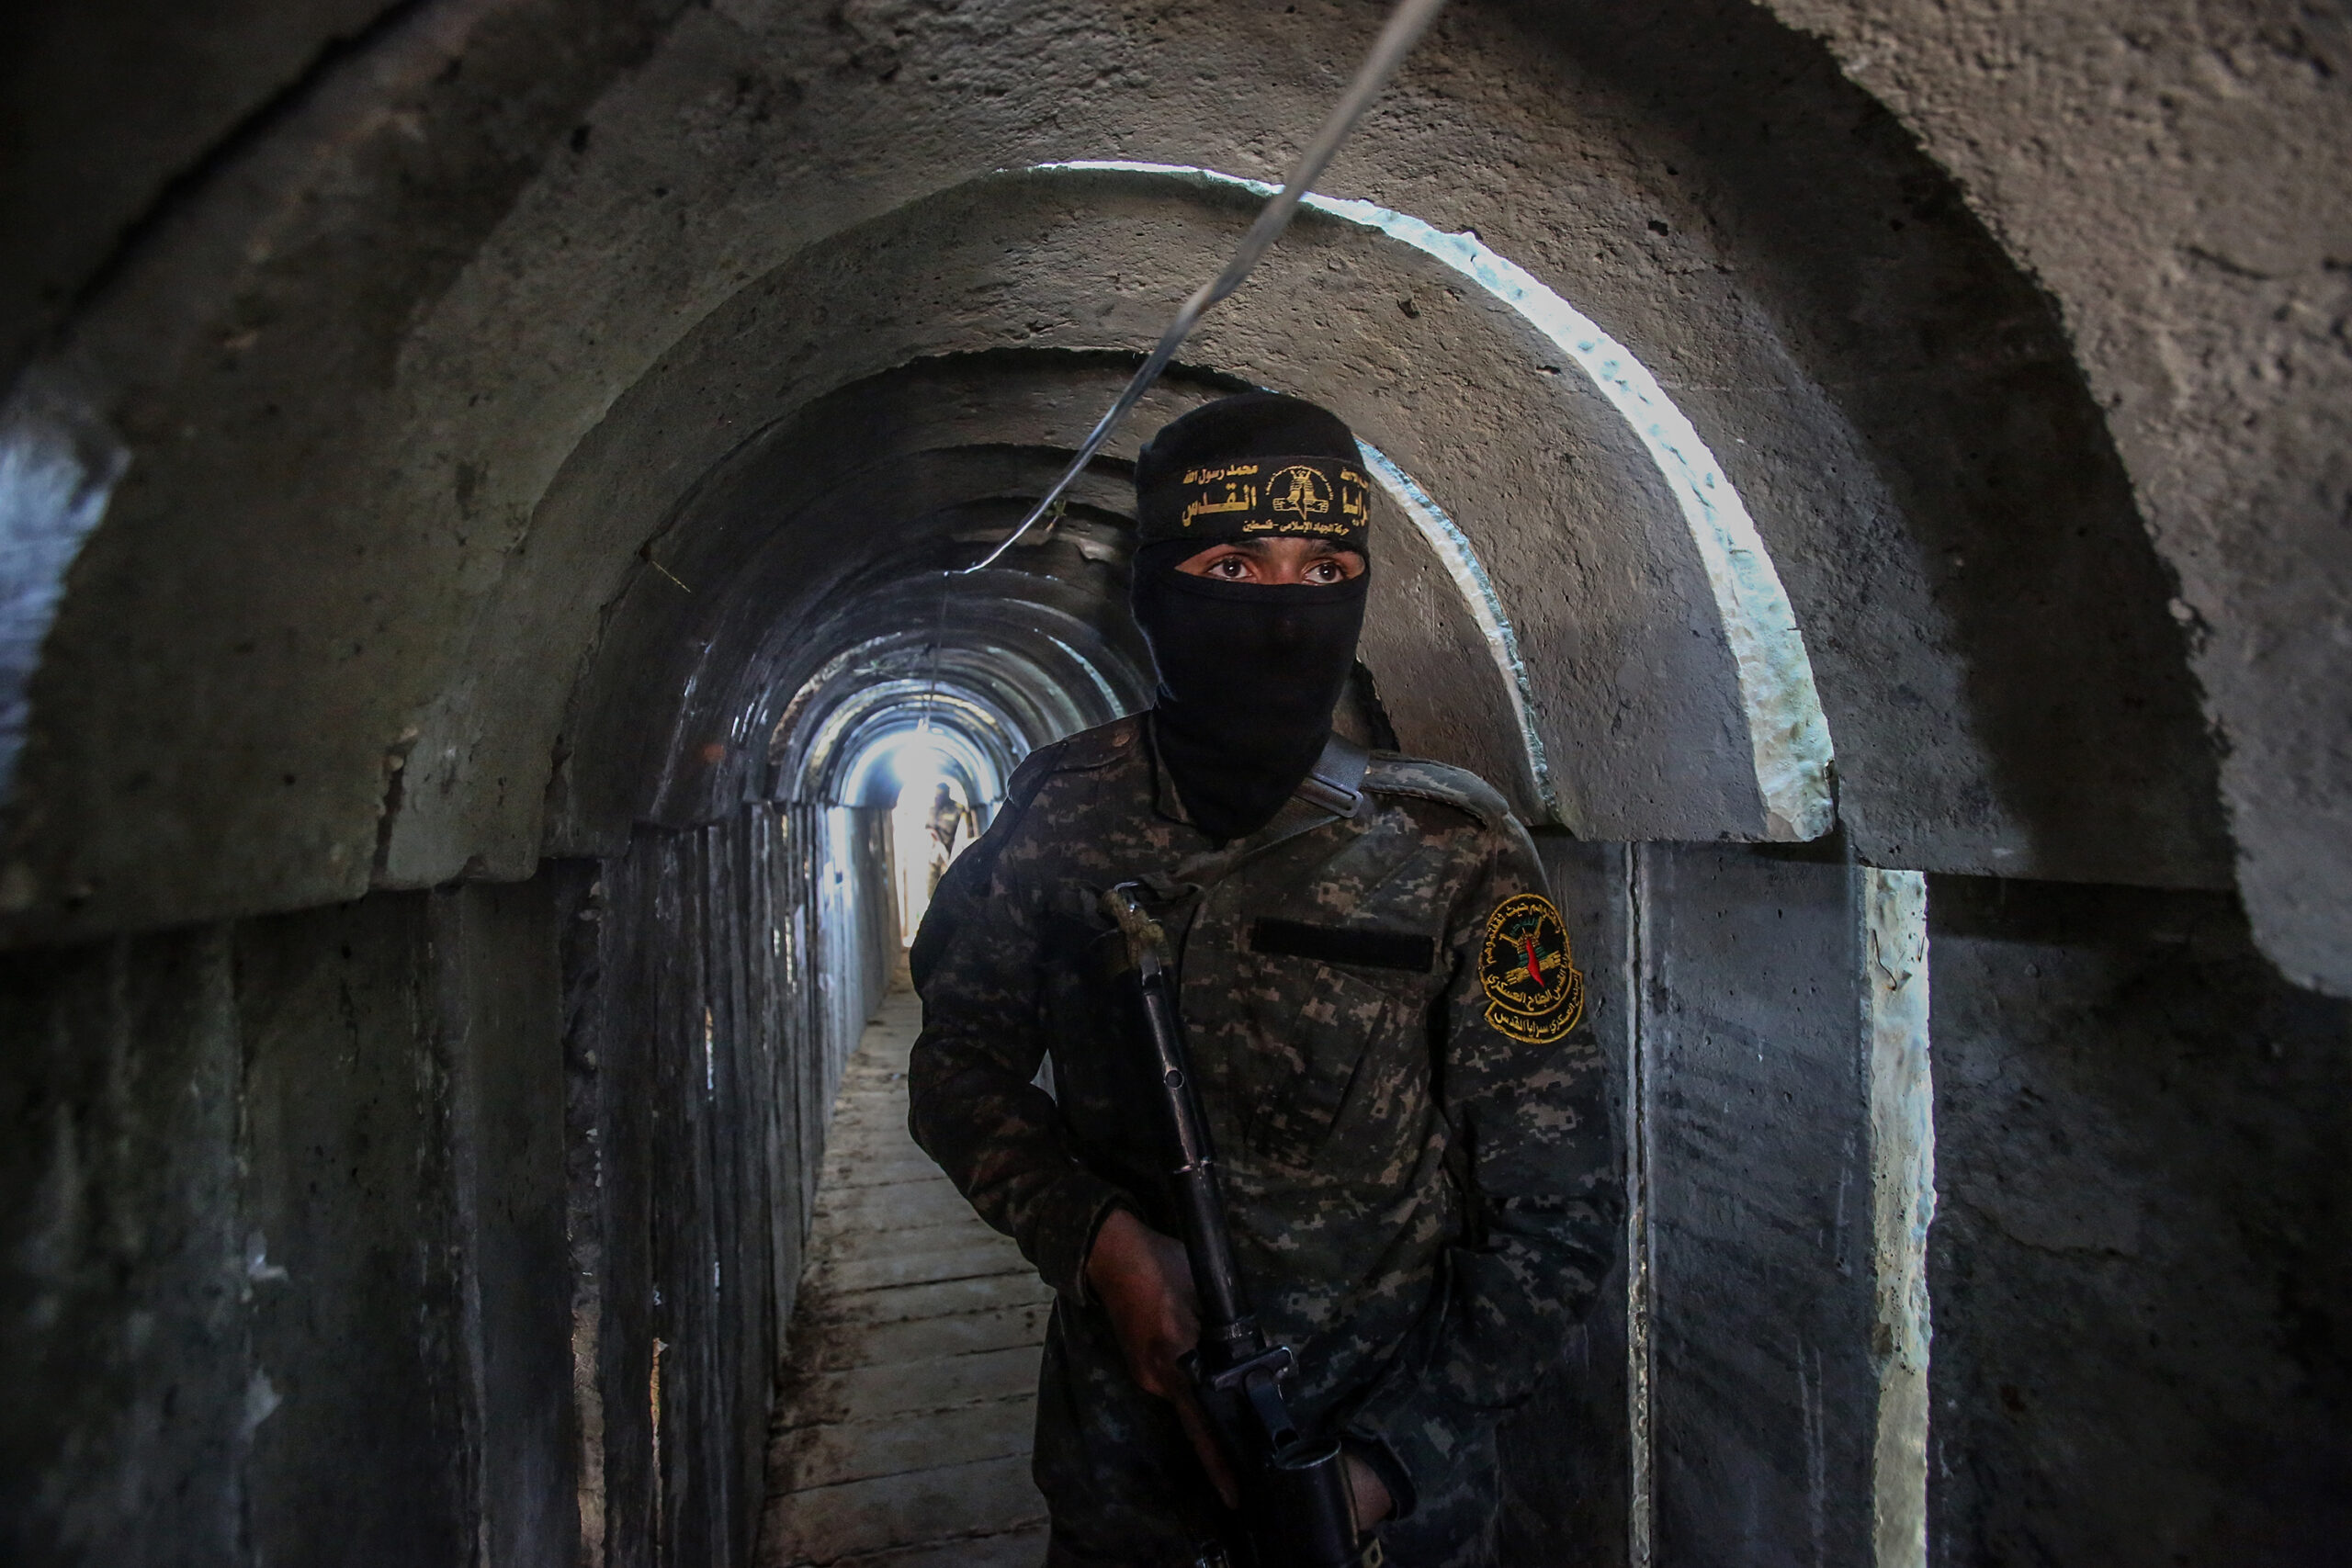 אנשי חמאס שנהרגו במנהרות ב"חומת מגן" מתו לא לא מהפצצות, אלא גם מהגז שהתפזר בעקבות הפיצוצים. לוחם גיהאד אסלאמי במנהרות בעזה, מאי 2022 (צילום: עטיה מוחמד / פלאש 90)